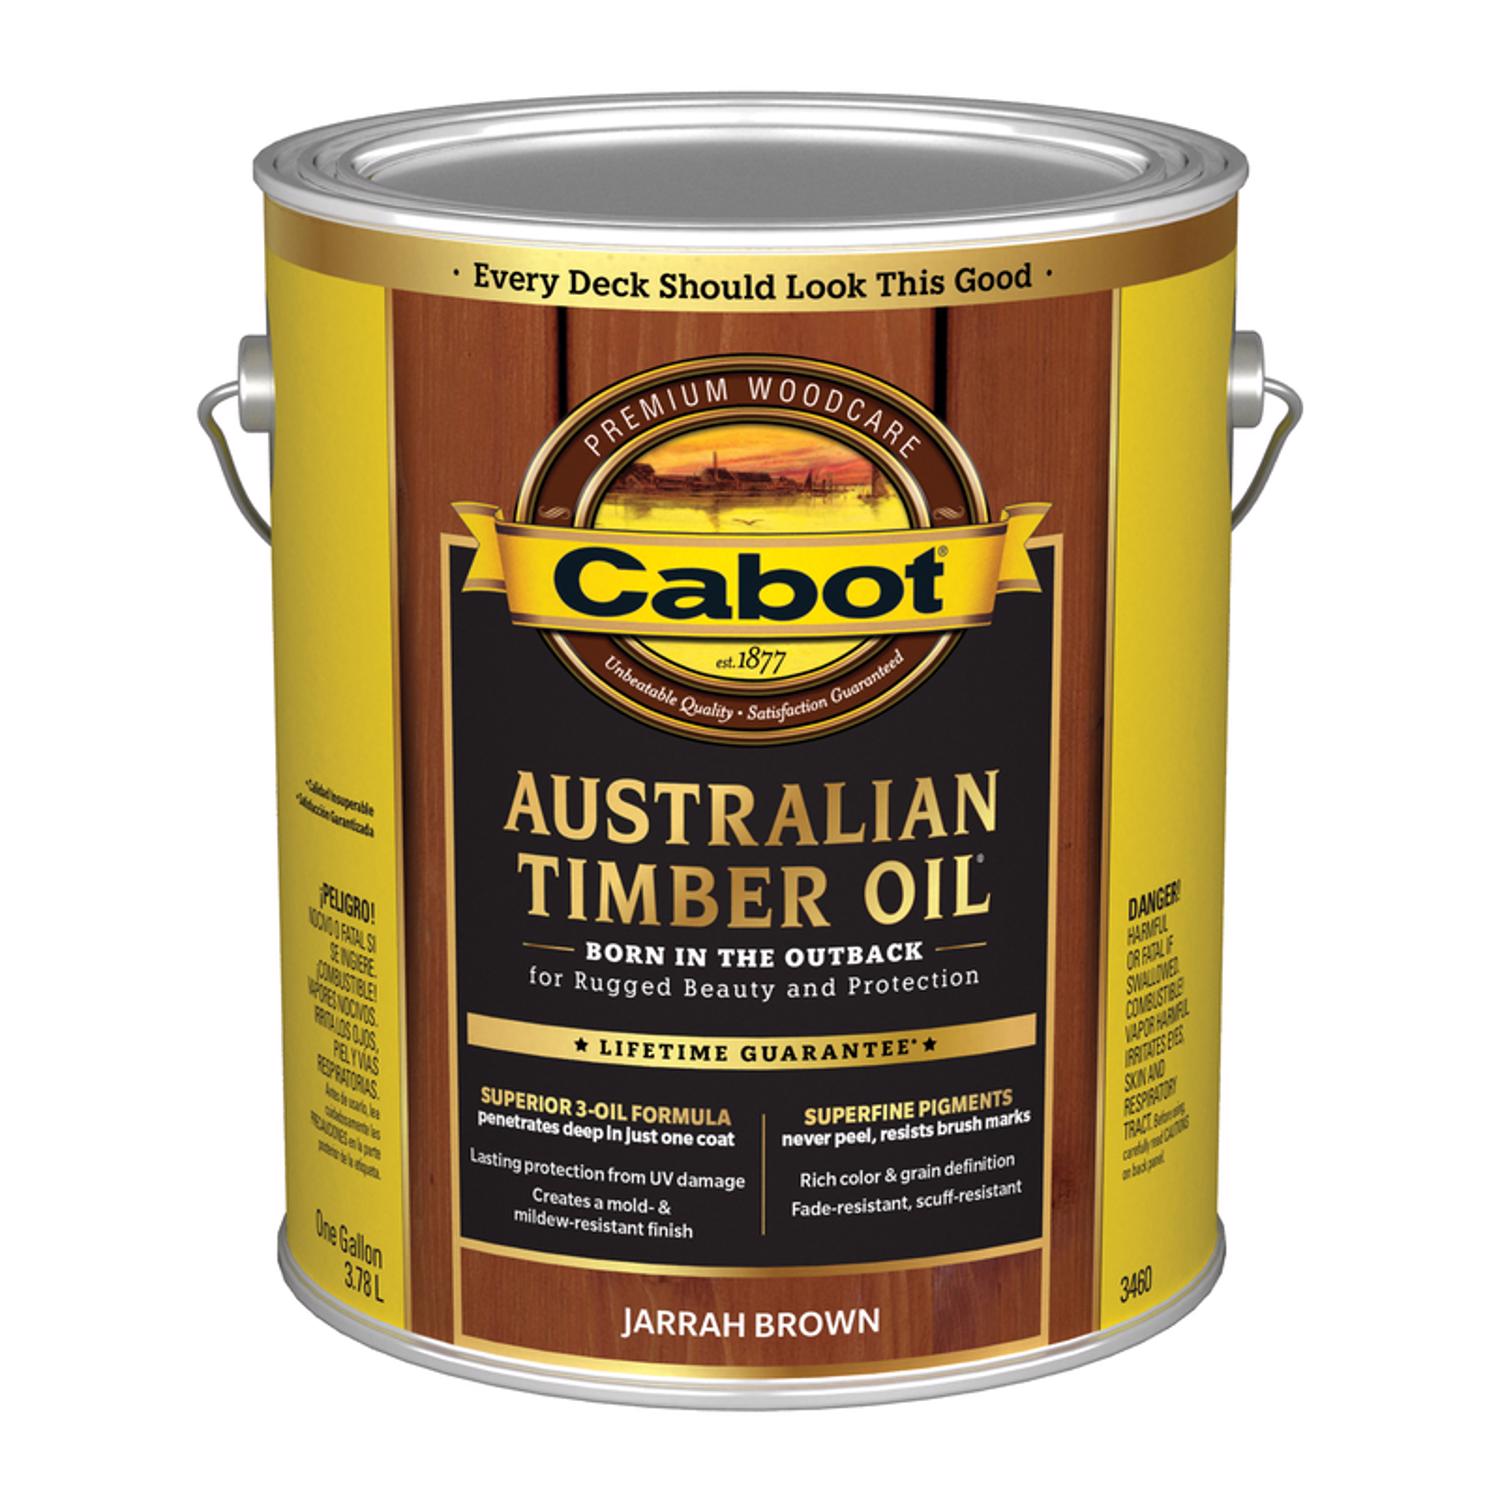 Cabot Australian Timber Oil Transparent Jarrah Brown Oil-Based Australian Timber Oil 1 gal